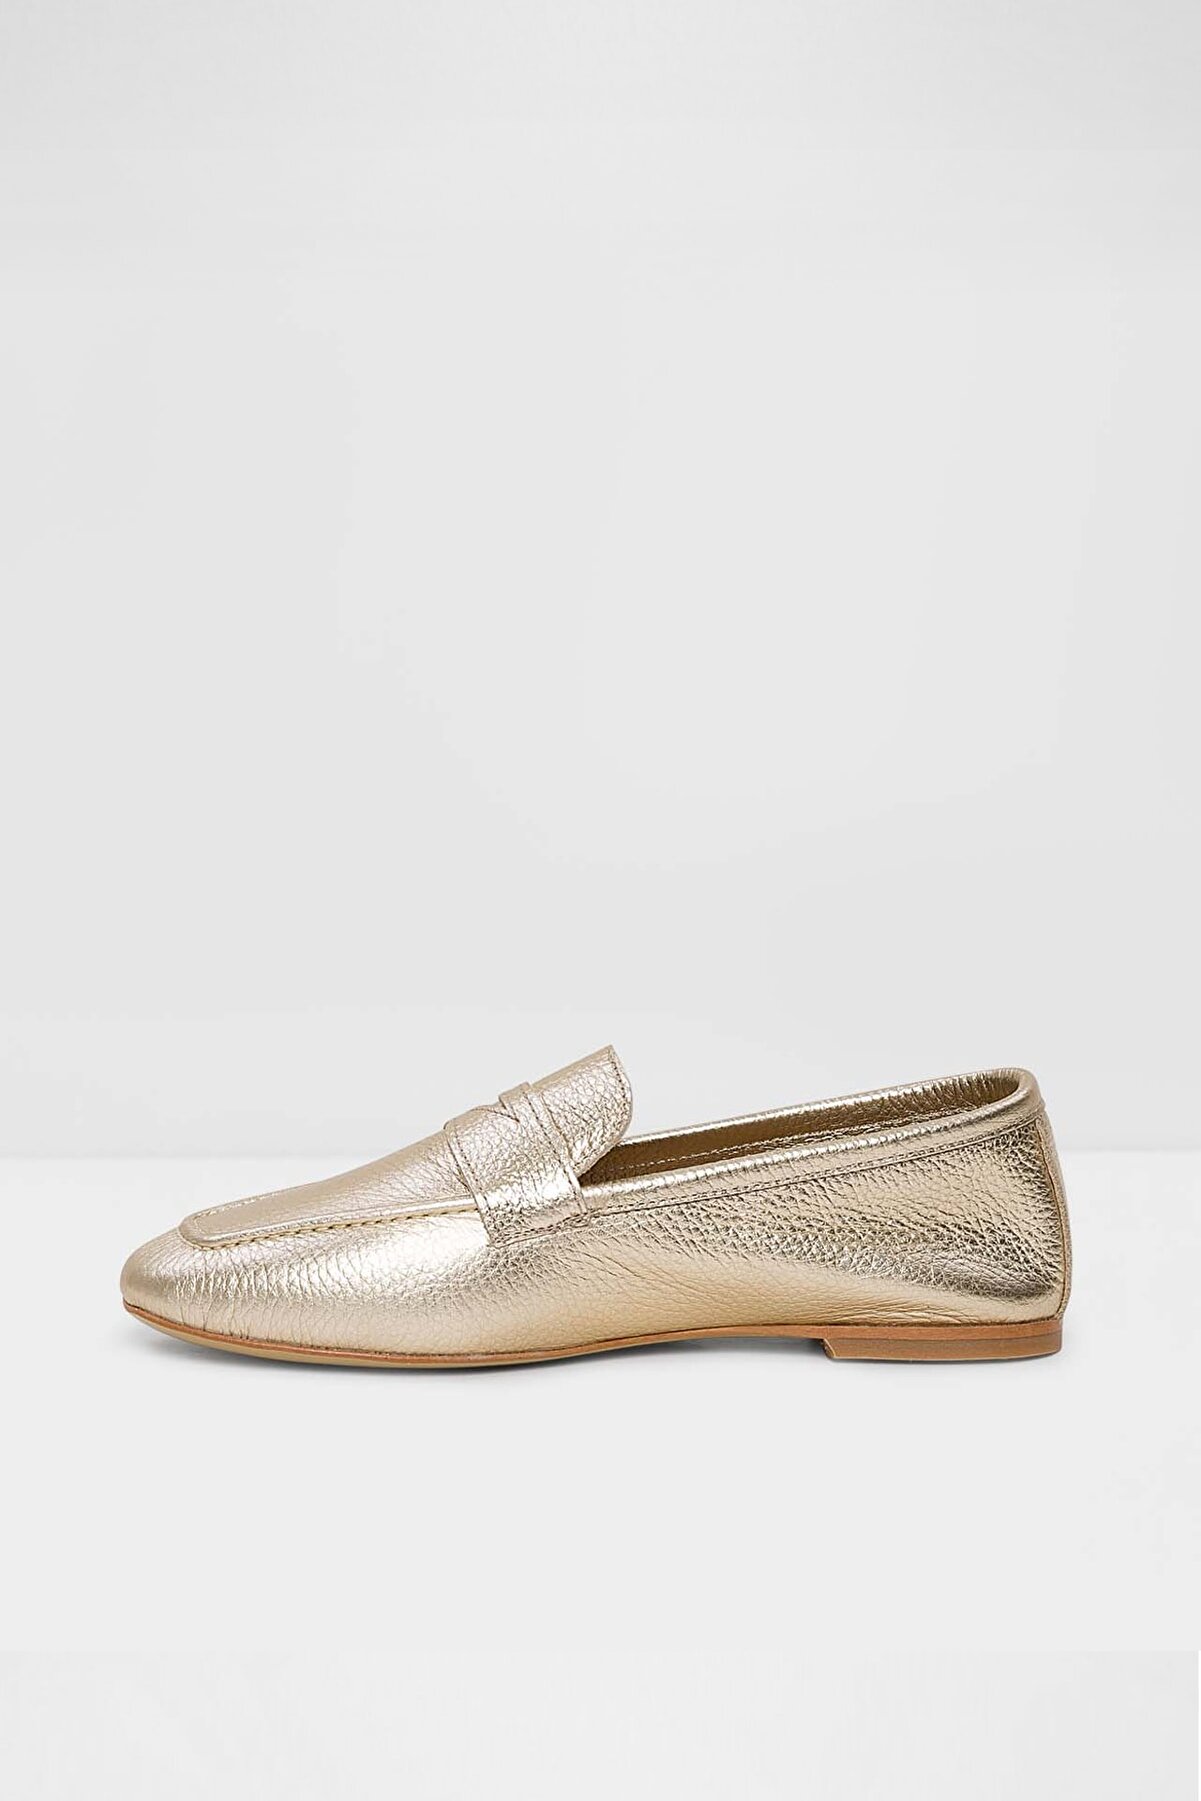 Aldo Kadın Altın Loafer Ayakkabı